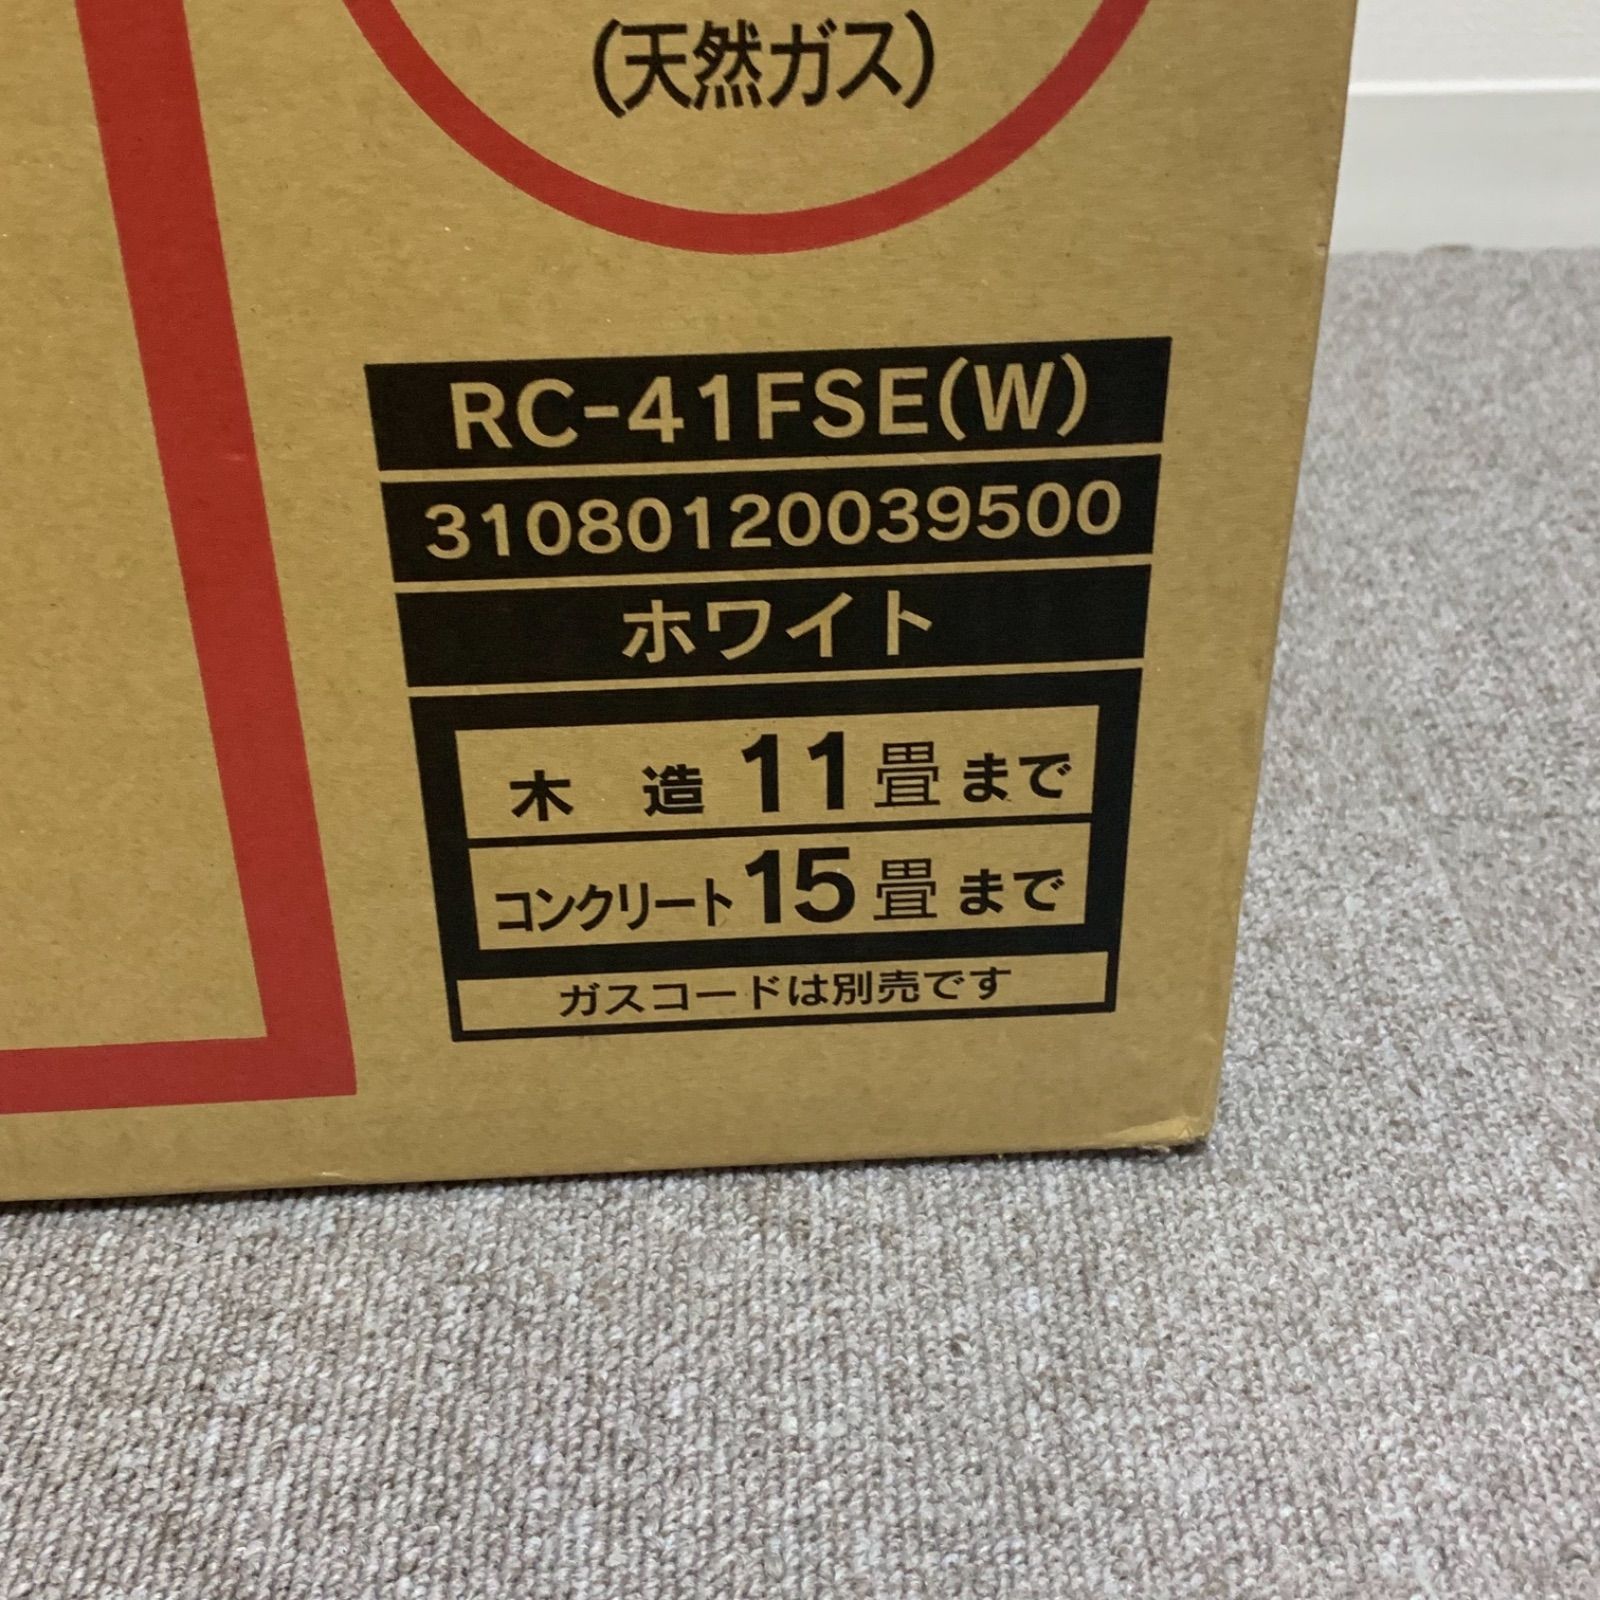 東邦ガス ガスファンヒーター 都市ガス用 RC-41FSE ホワイト - PRICE